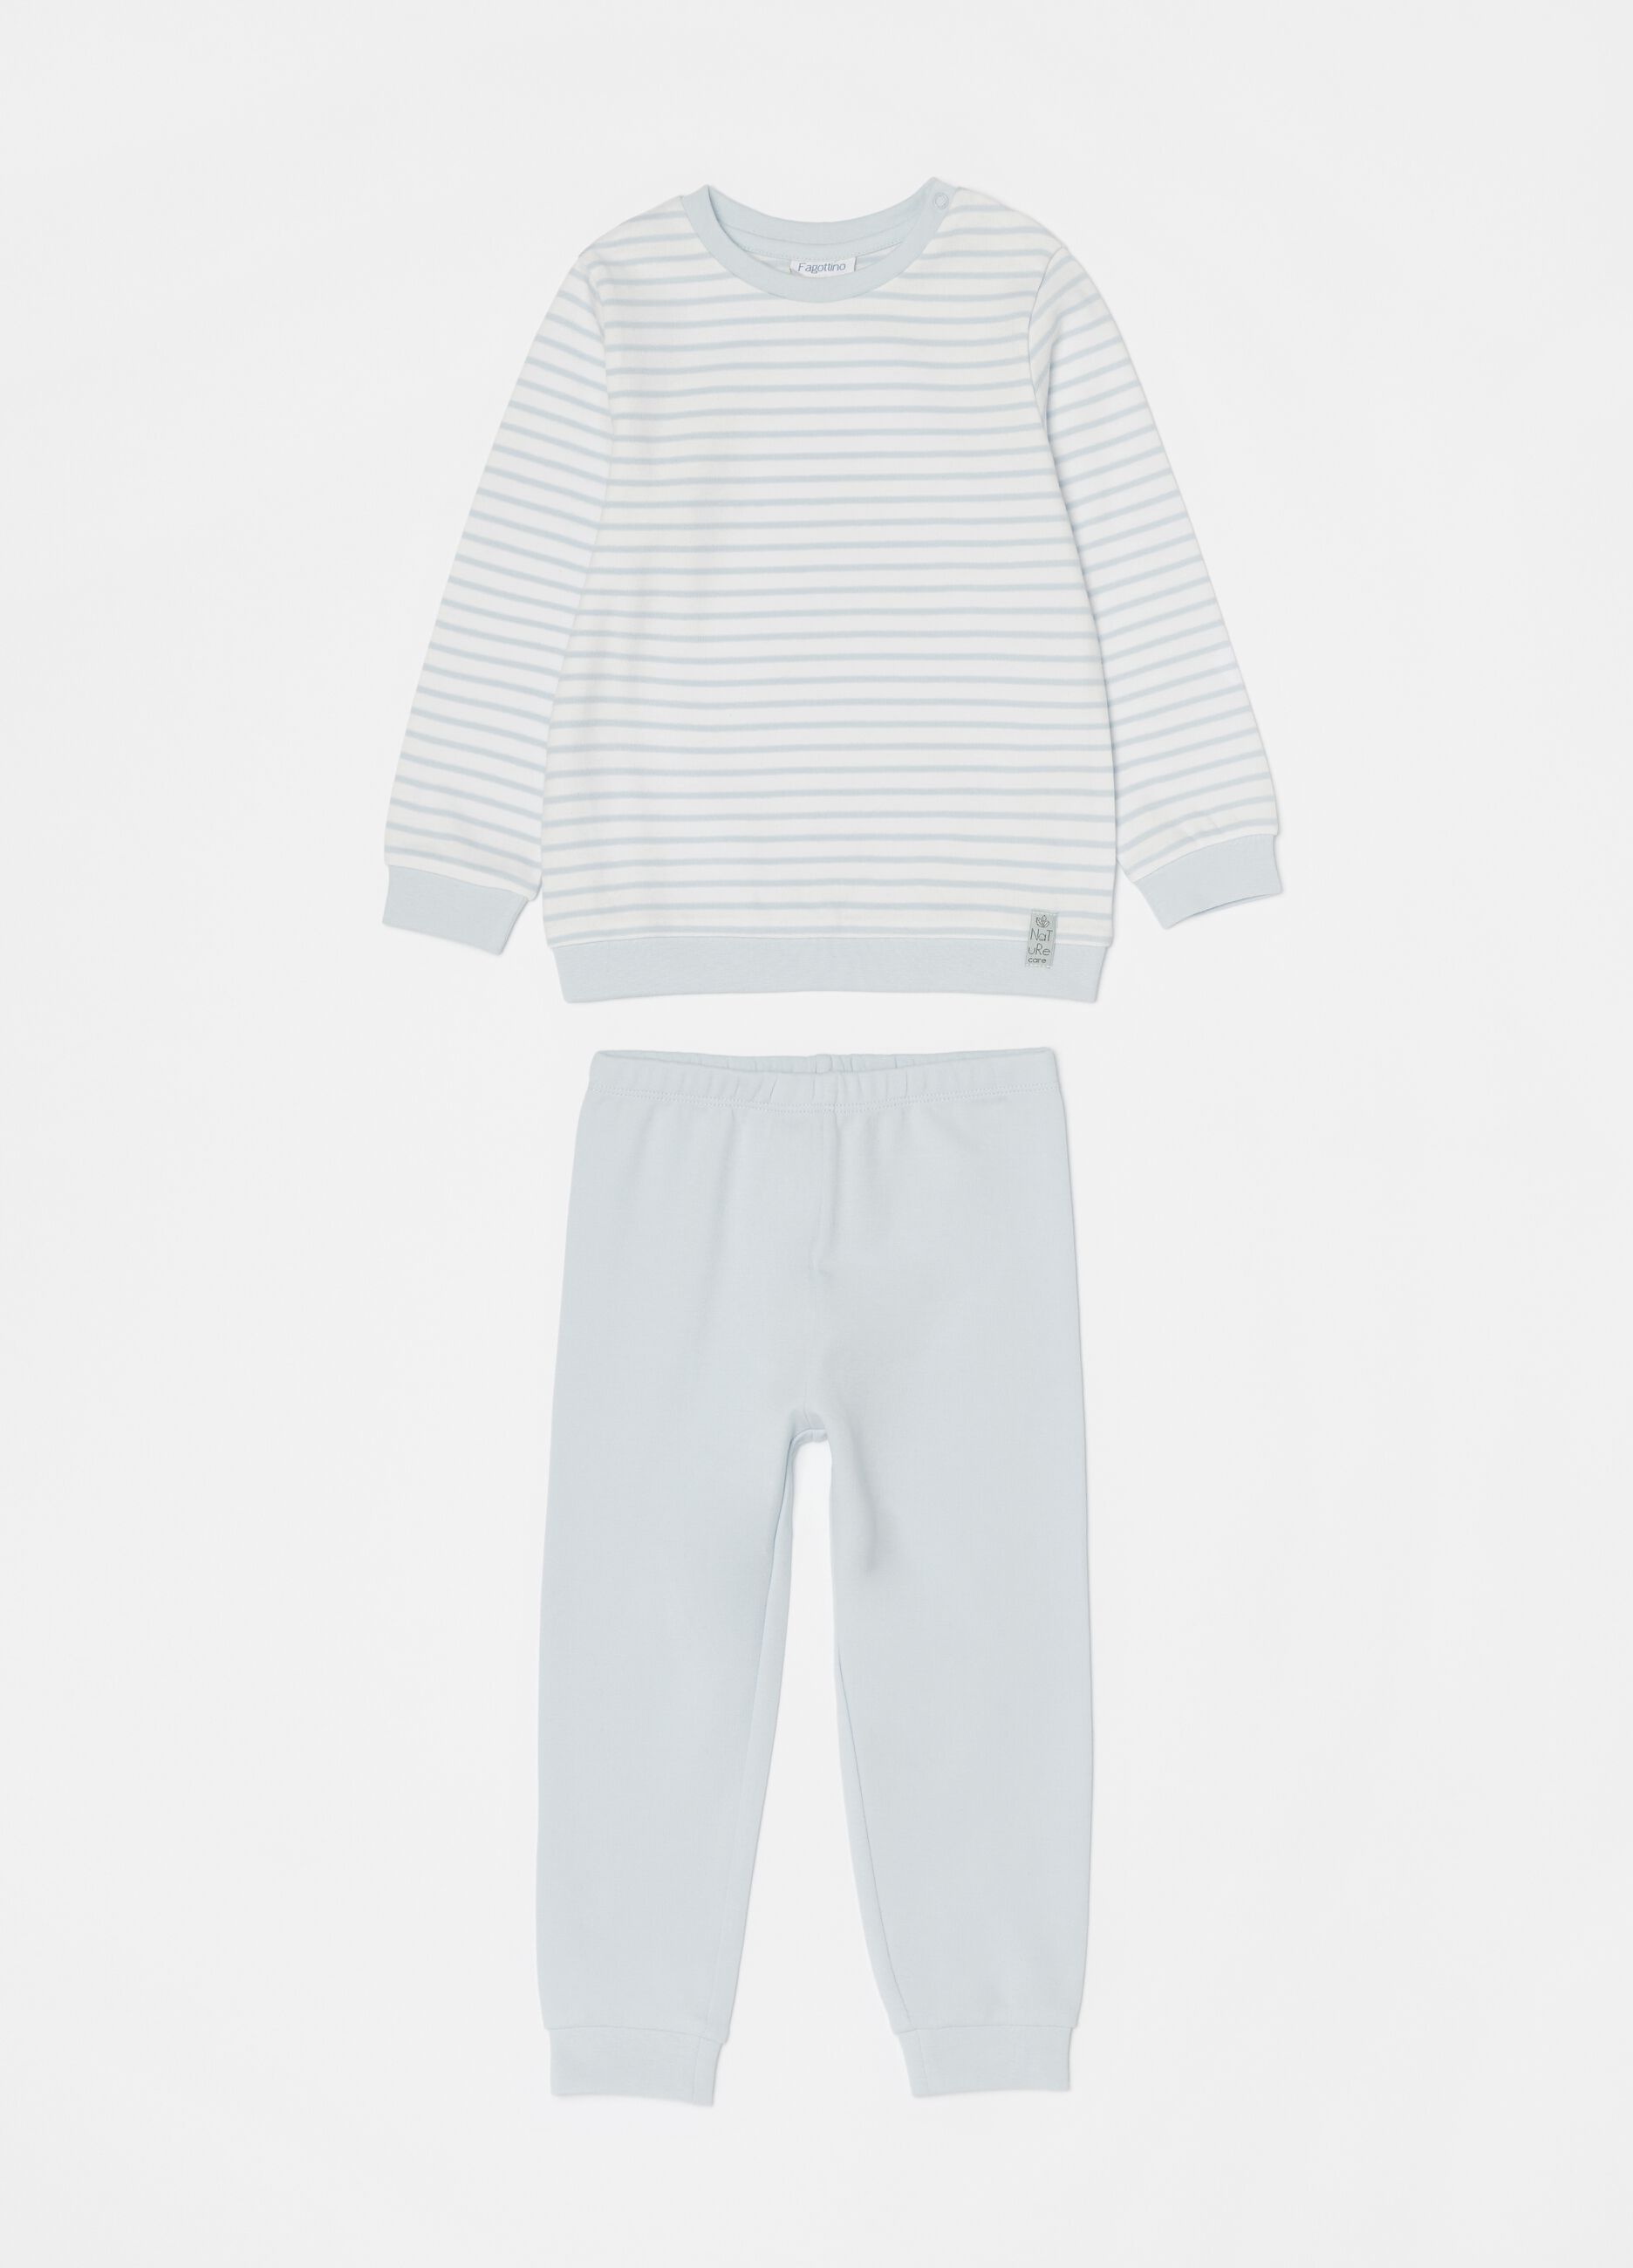 Long 100% cotton pyjamas with stripes